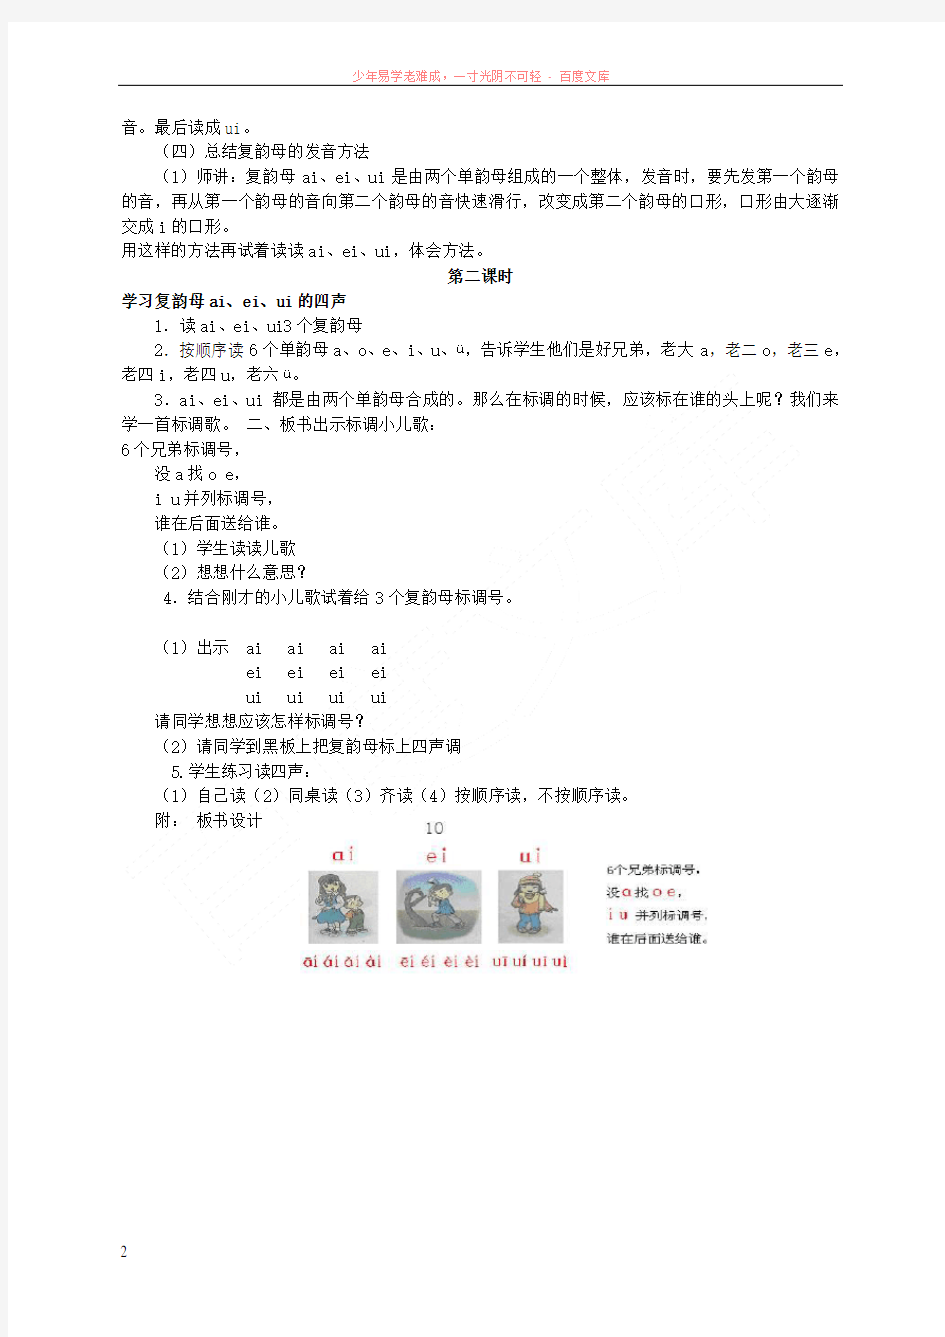 一年级语文上册aieiui教案北京版